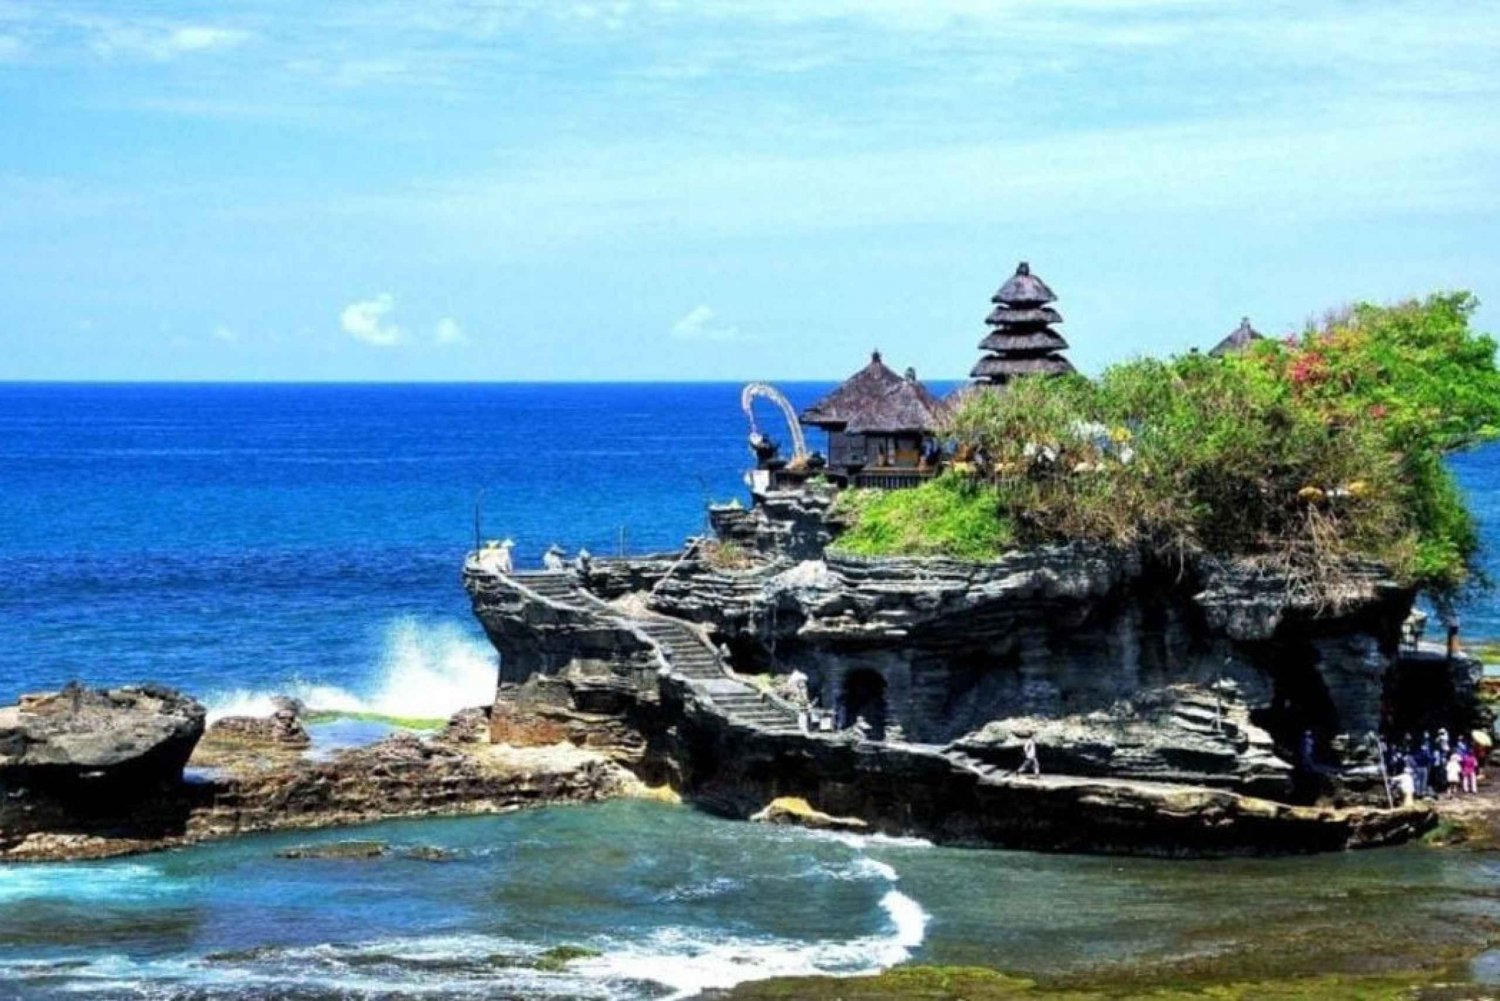 Bali: Tanah Lot-tempelet, Padang-padang-stranden, Kecak-dans